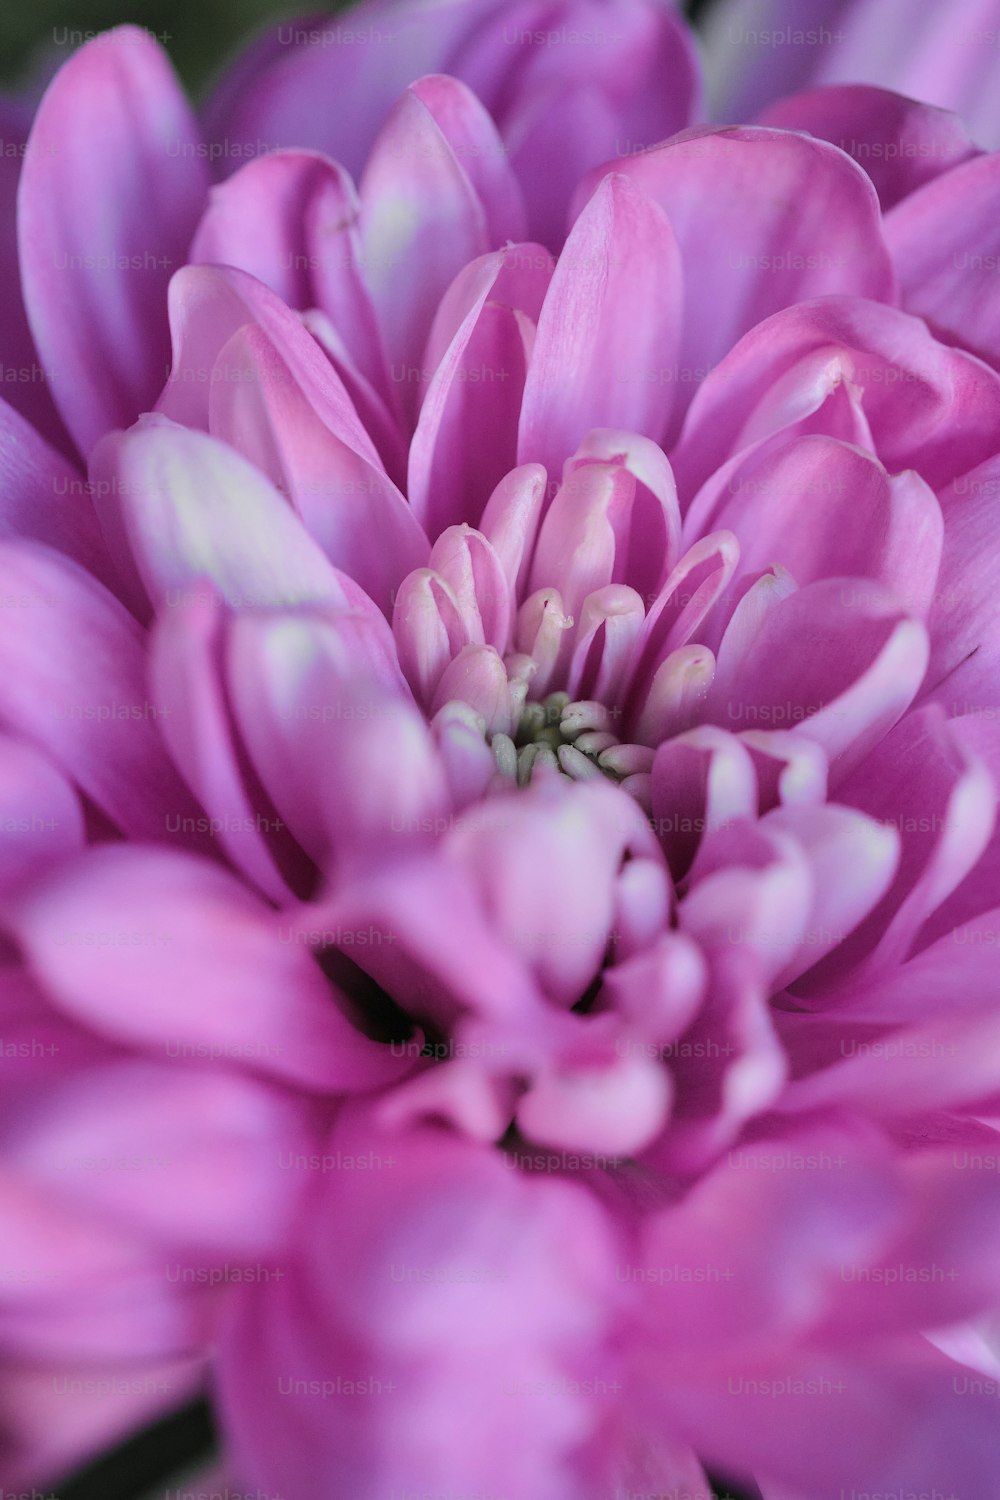 Un primer plano de una flor rosa con un fondo borroso